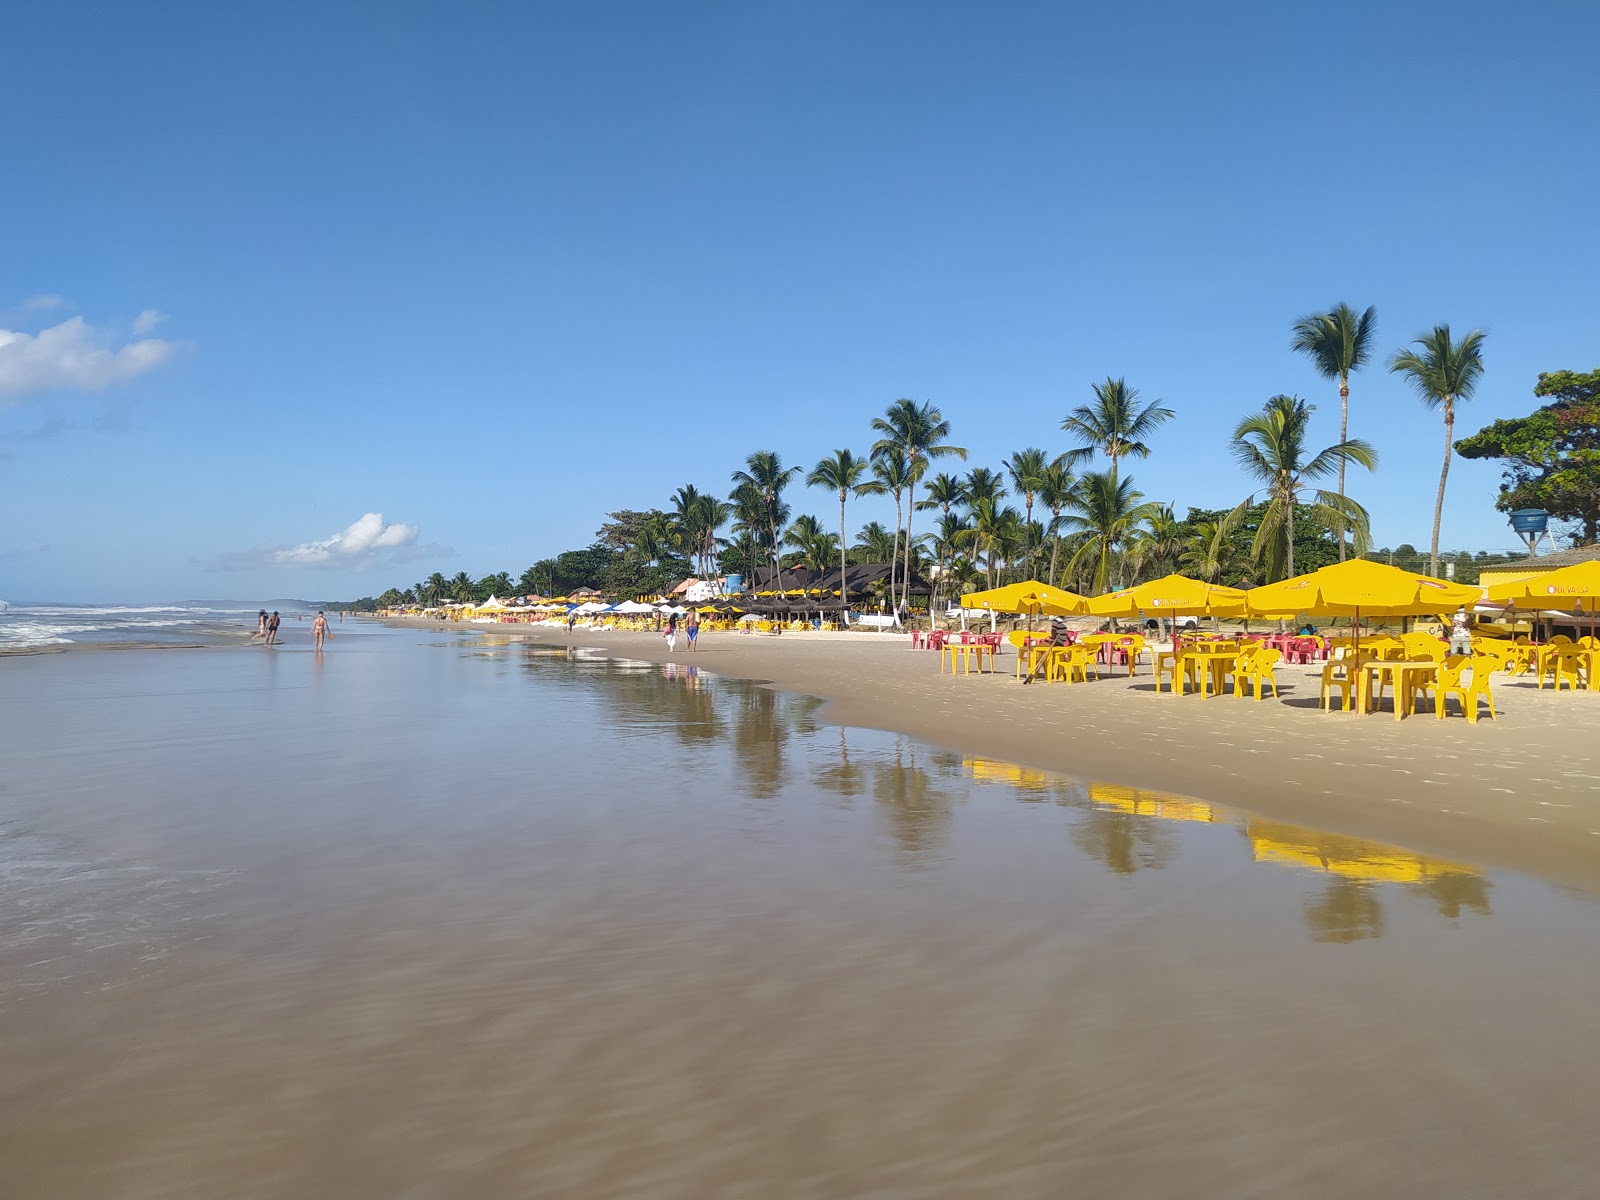 Valokuva Praia Dos Milionariosista. pinnalla kirkas hieno hiekka:n kanssa